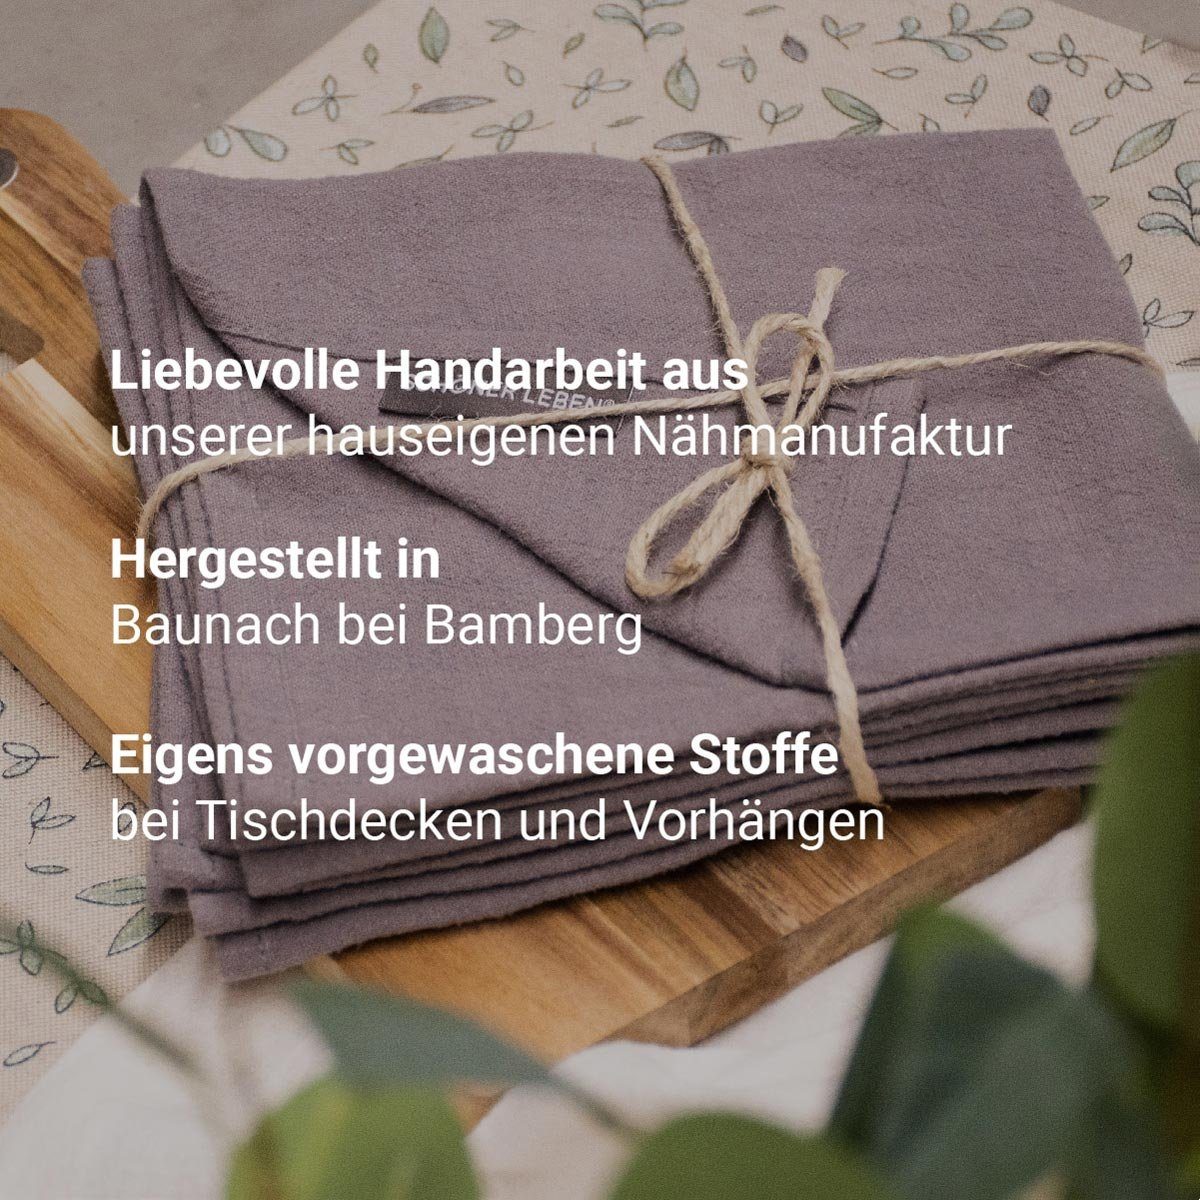 SCHÖNER Tulpen Tischläufer Tischläufer bunt SCHÖNER LEBEN. handmade Fryett´s Blumen 40x160cm, LEBEN. beige